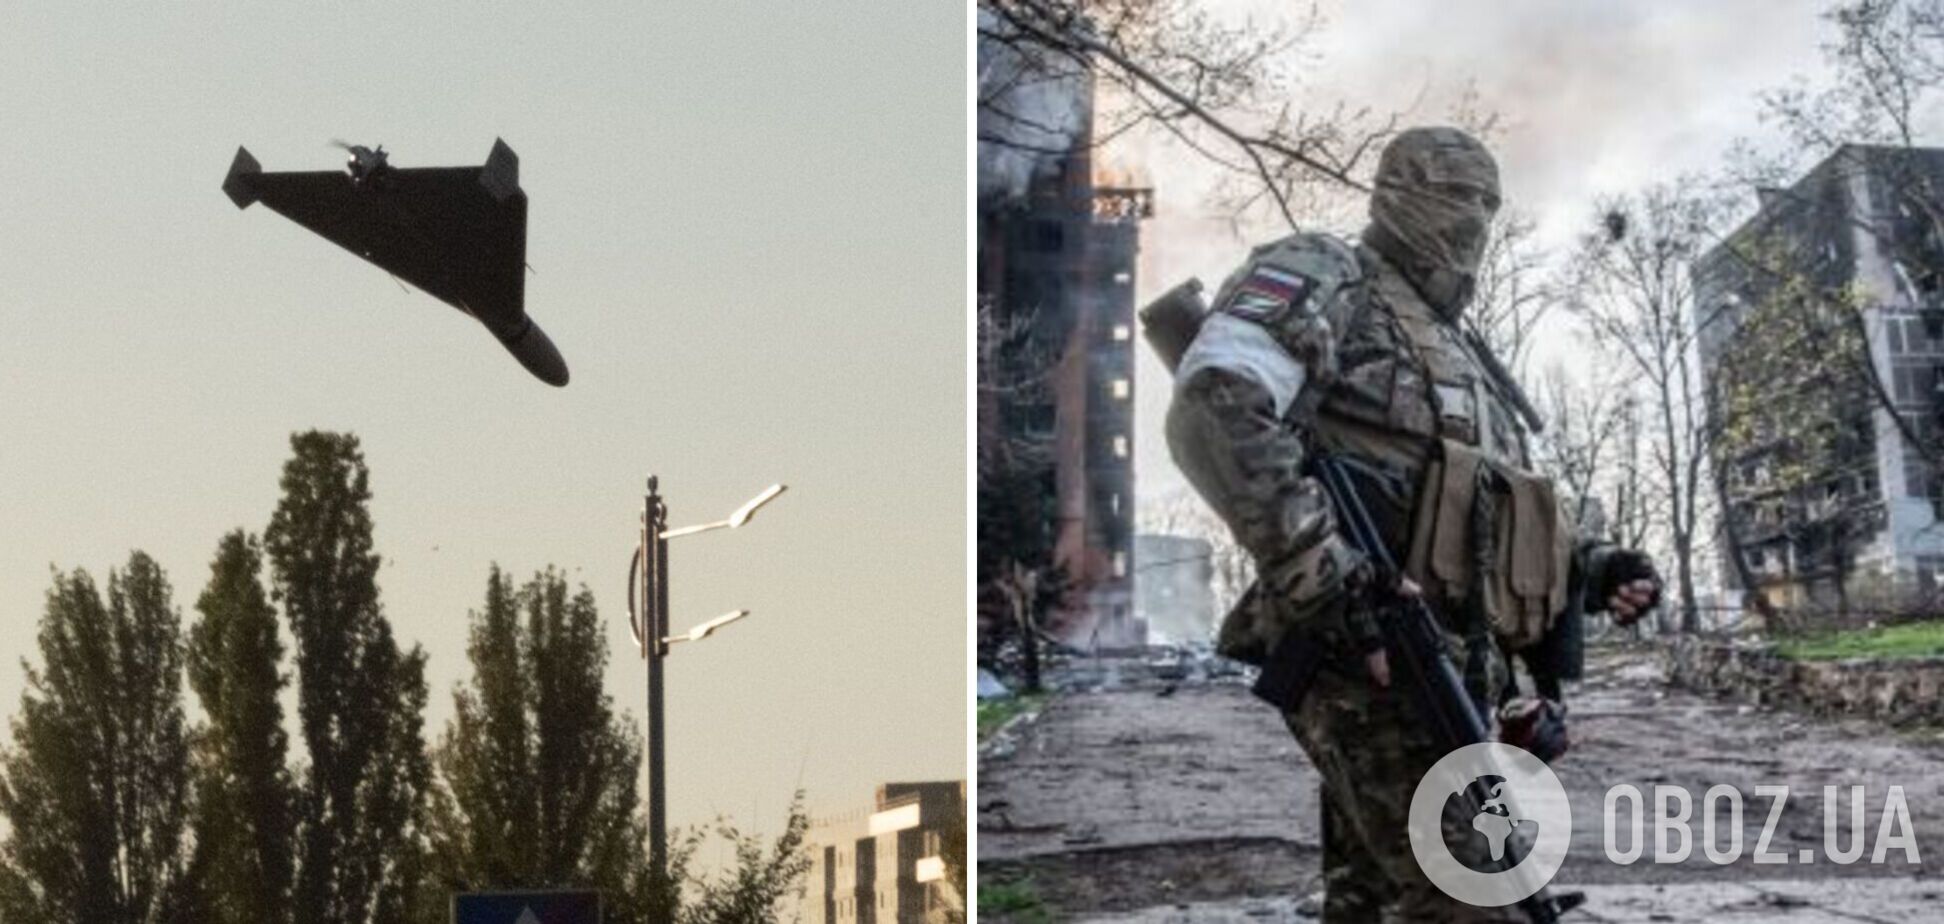 РФ запустила дрон-разведчик и 'атаковала' Украину воздушными шарами: что происходило 12 февраля